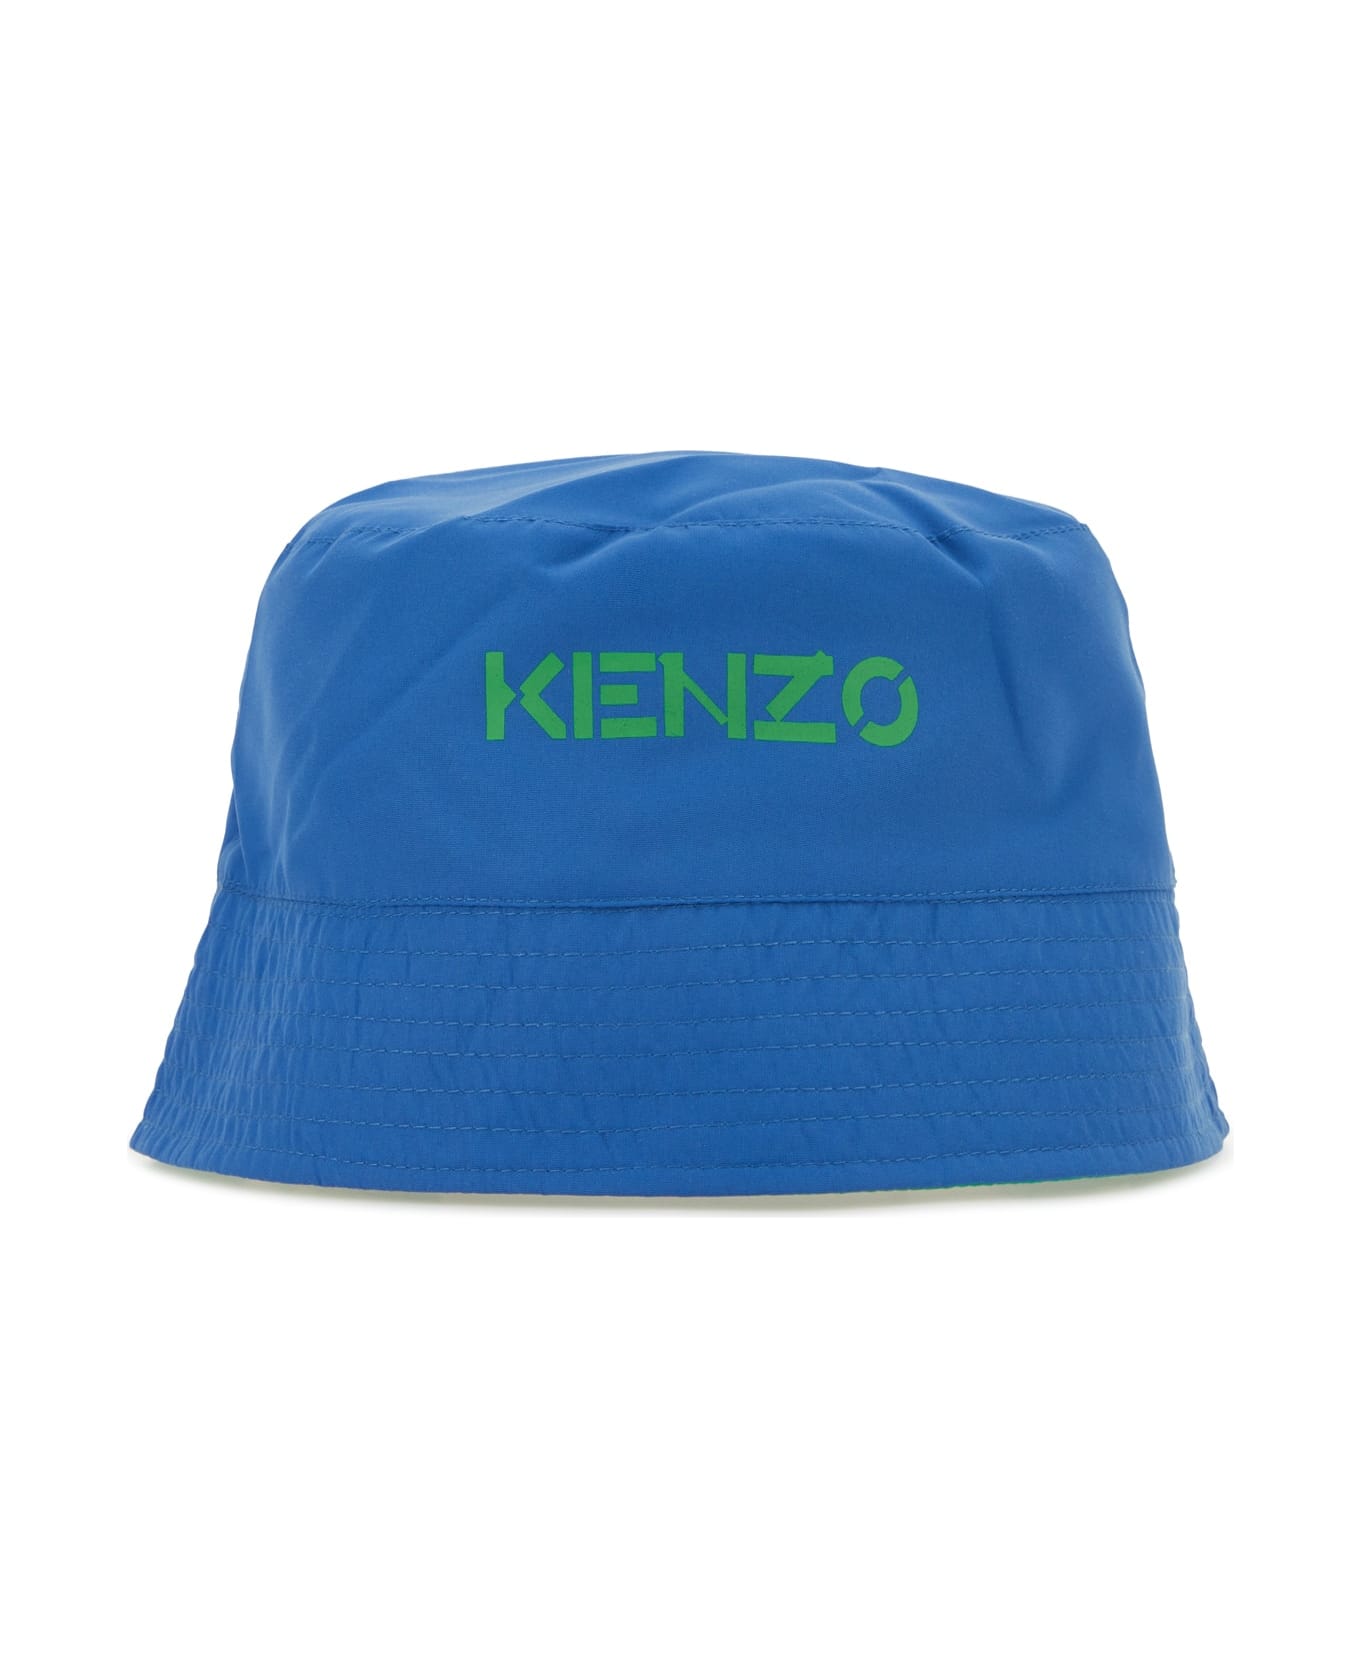 Kenzo Kids Cappello - 878